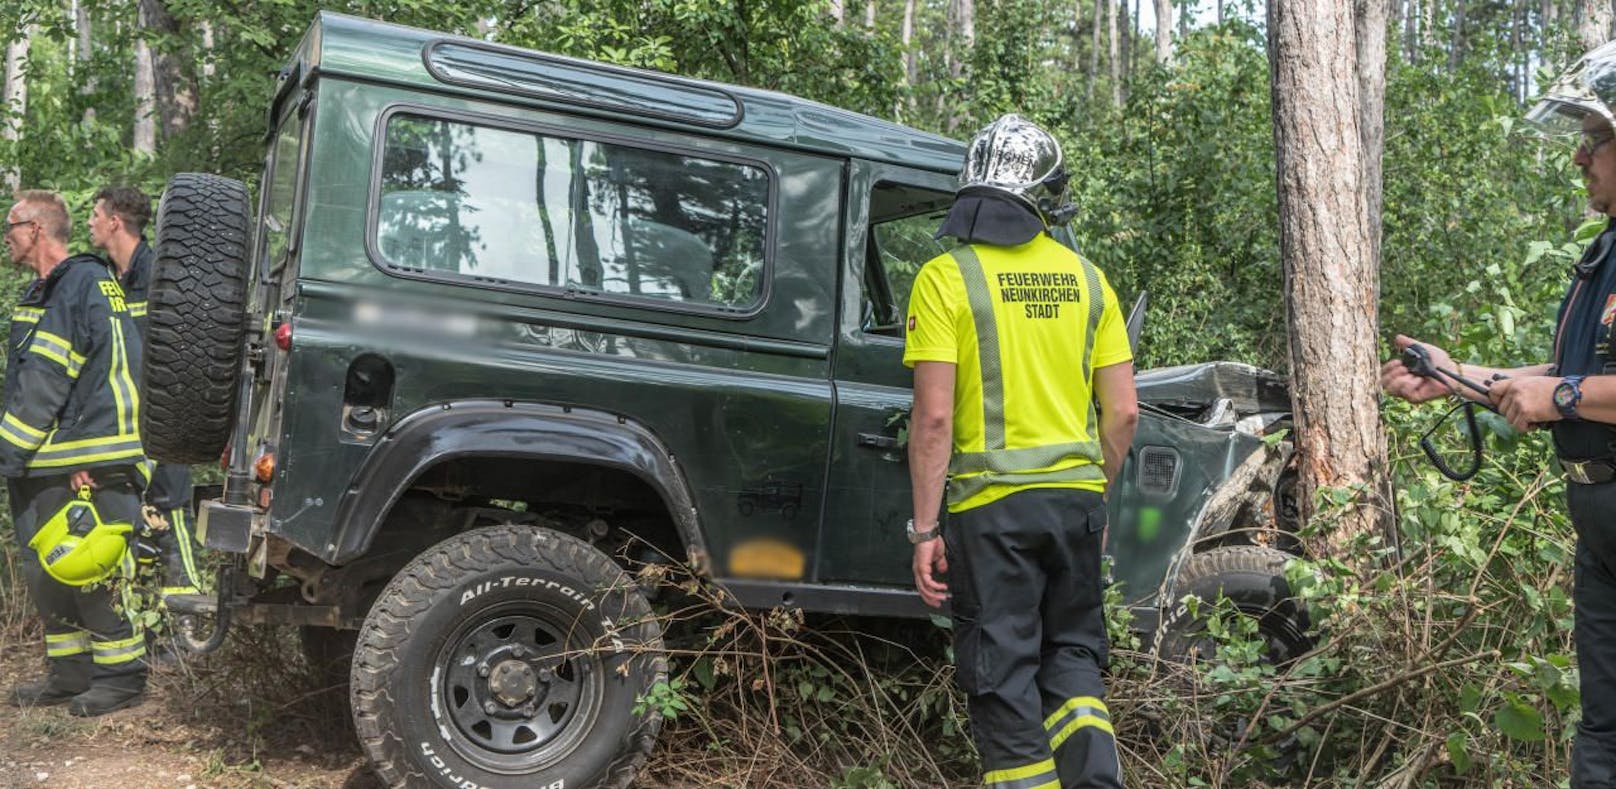 Land Rover kracht frontal gegen Baum: 5 Verletzte